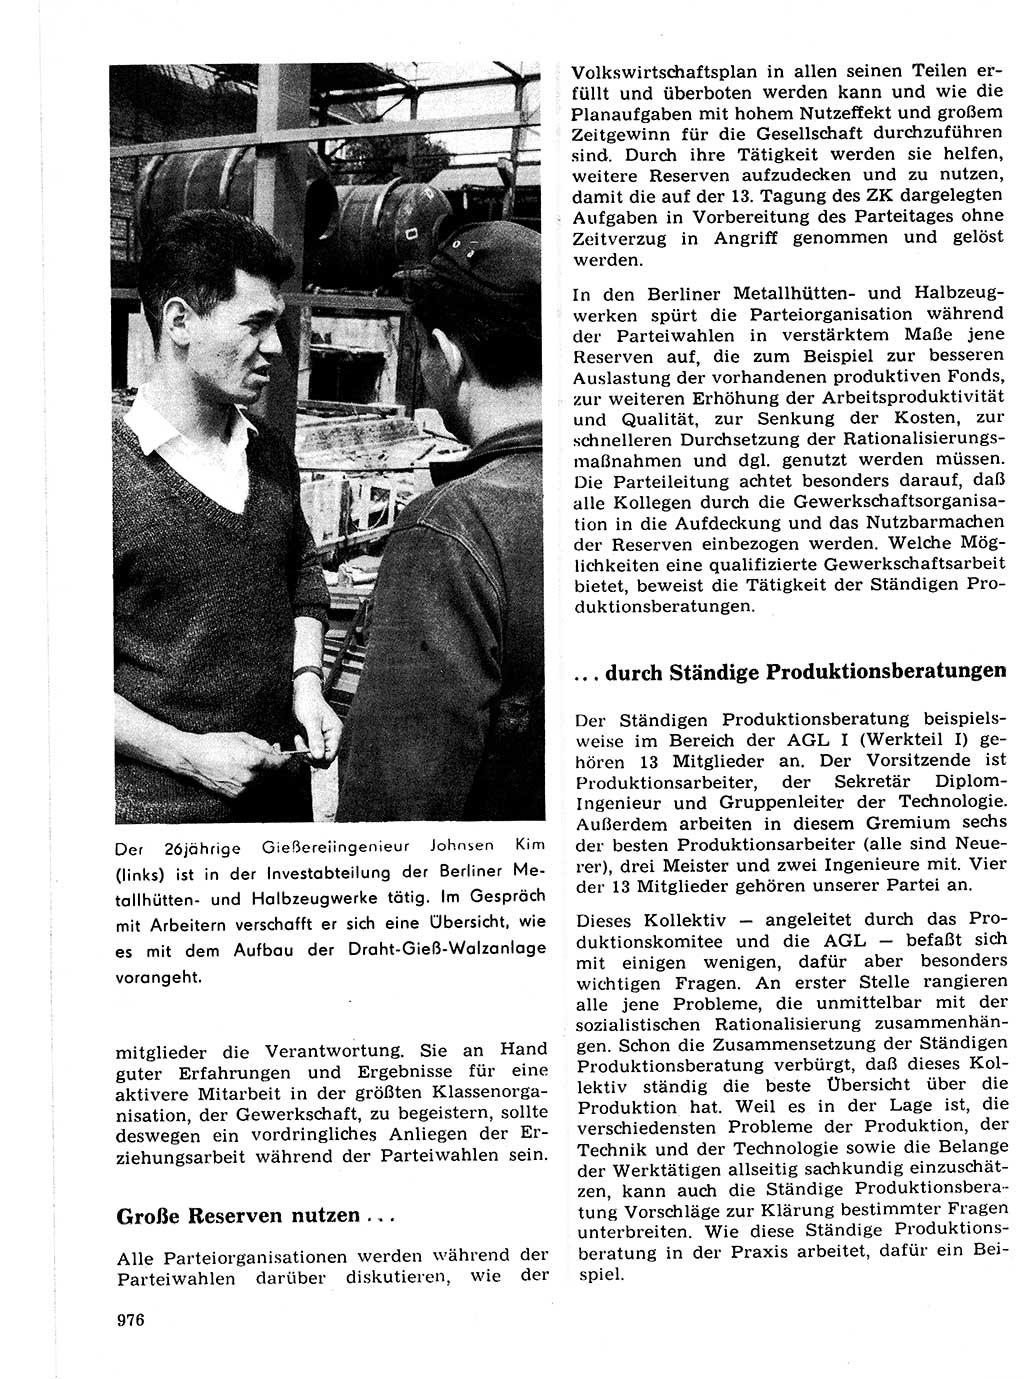 Neuer Weg (NW), Organ des Zentralkomitees (ZK) der SED (Sozialistische Einheitspartei Deutschlands) für Fragen des Parteilebens, 21. Jahrgang [Deutsche Demokratische Republik (DDR)] 1966, Seite 976 (NW ZK SED DDR 1966, S. 976)